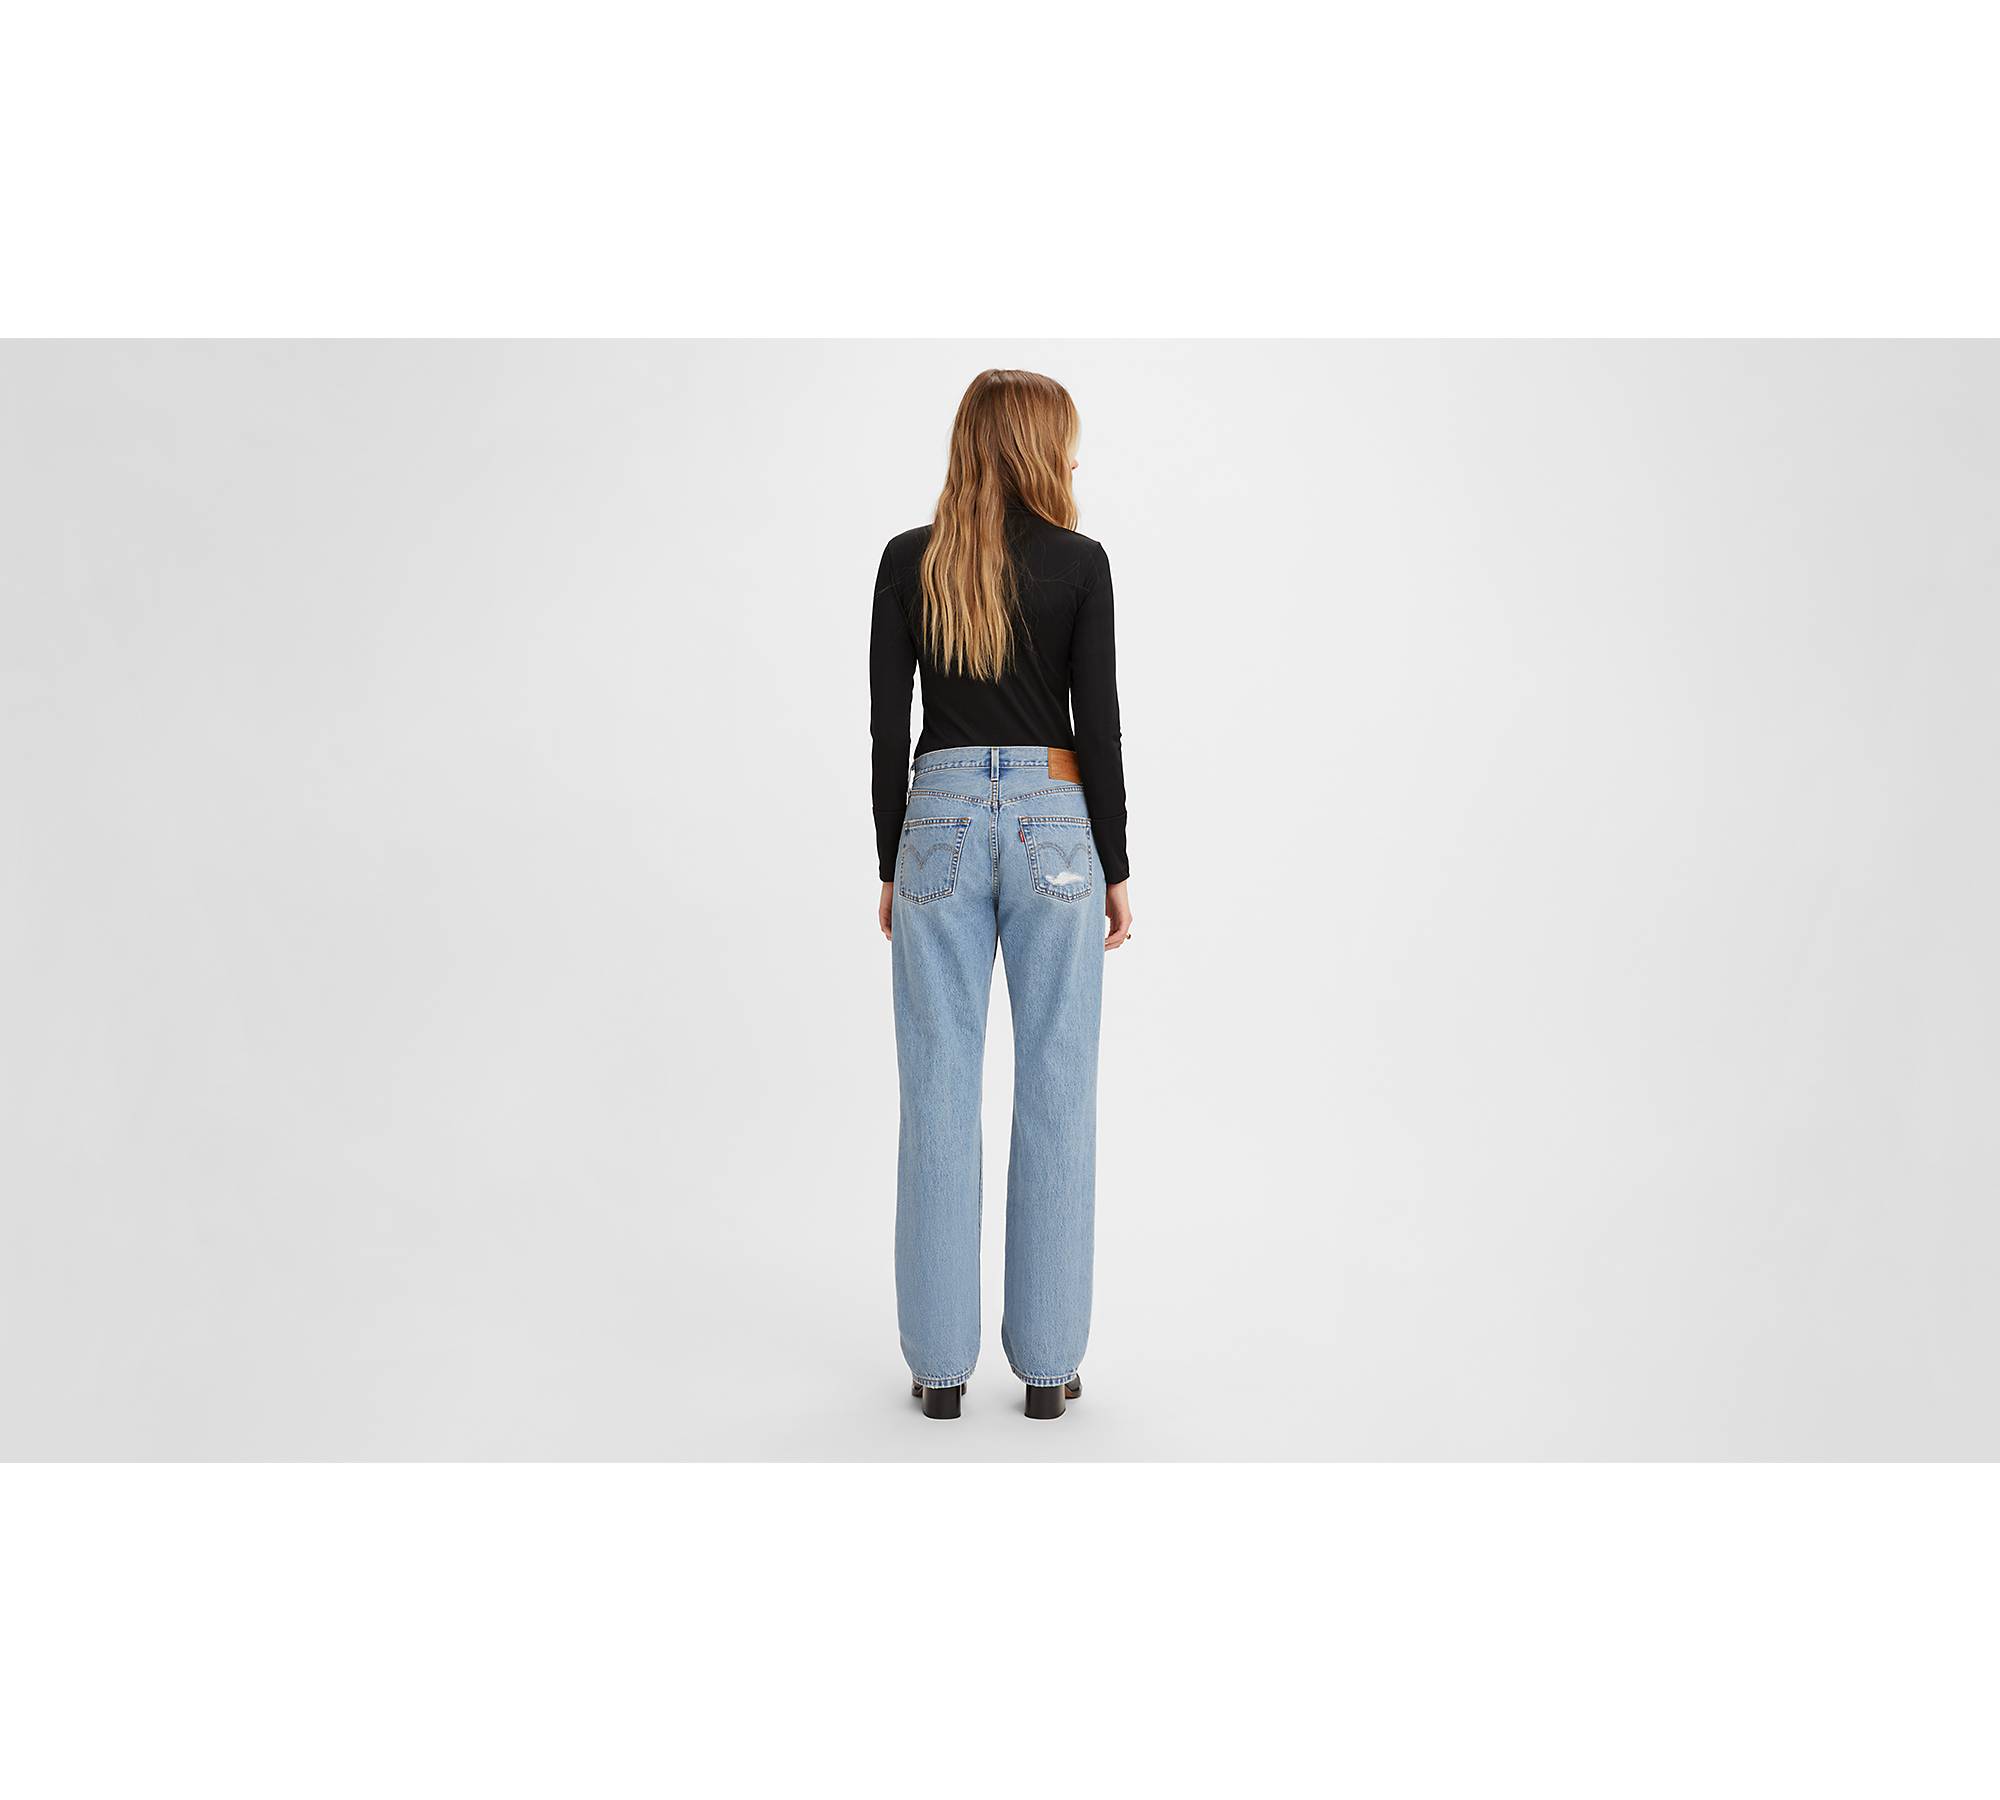 levis 501 jeans, Womens 25 26 Waist vintage levis jeans, 90s